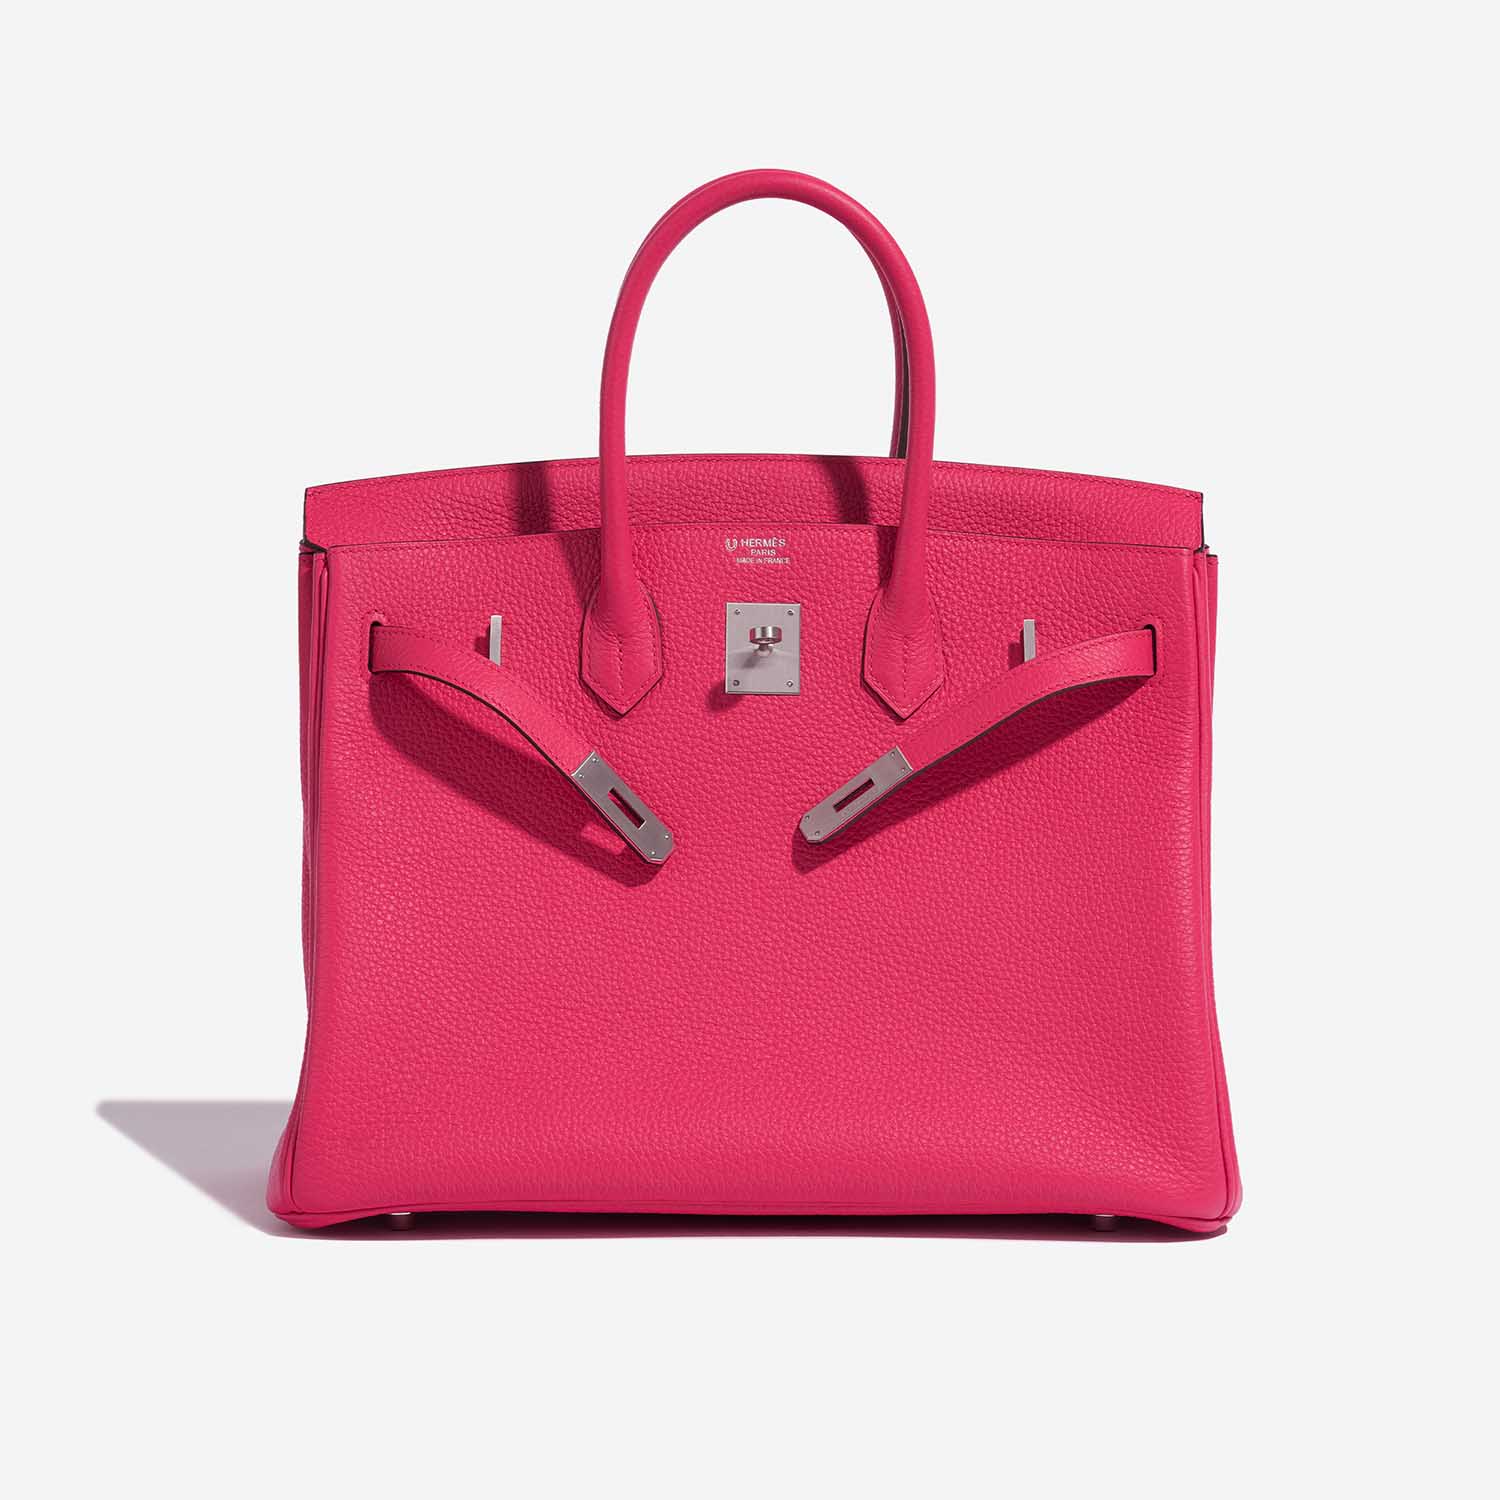 Pre-owned Hermès Tasche Birkin HSS 35 Taurillon Clemence Rose Extreme / Rose Pourpre Rose Front Open | Verkaufen Sie Ihre Designer-Tasche auf Saclab.com